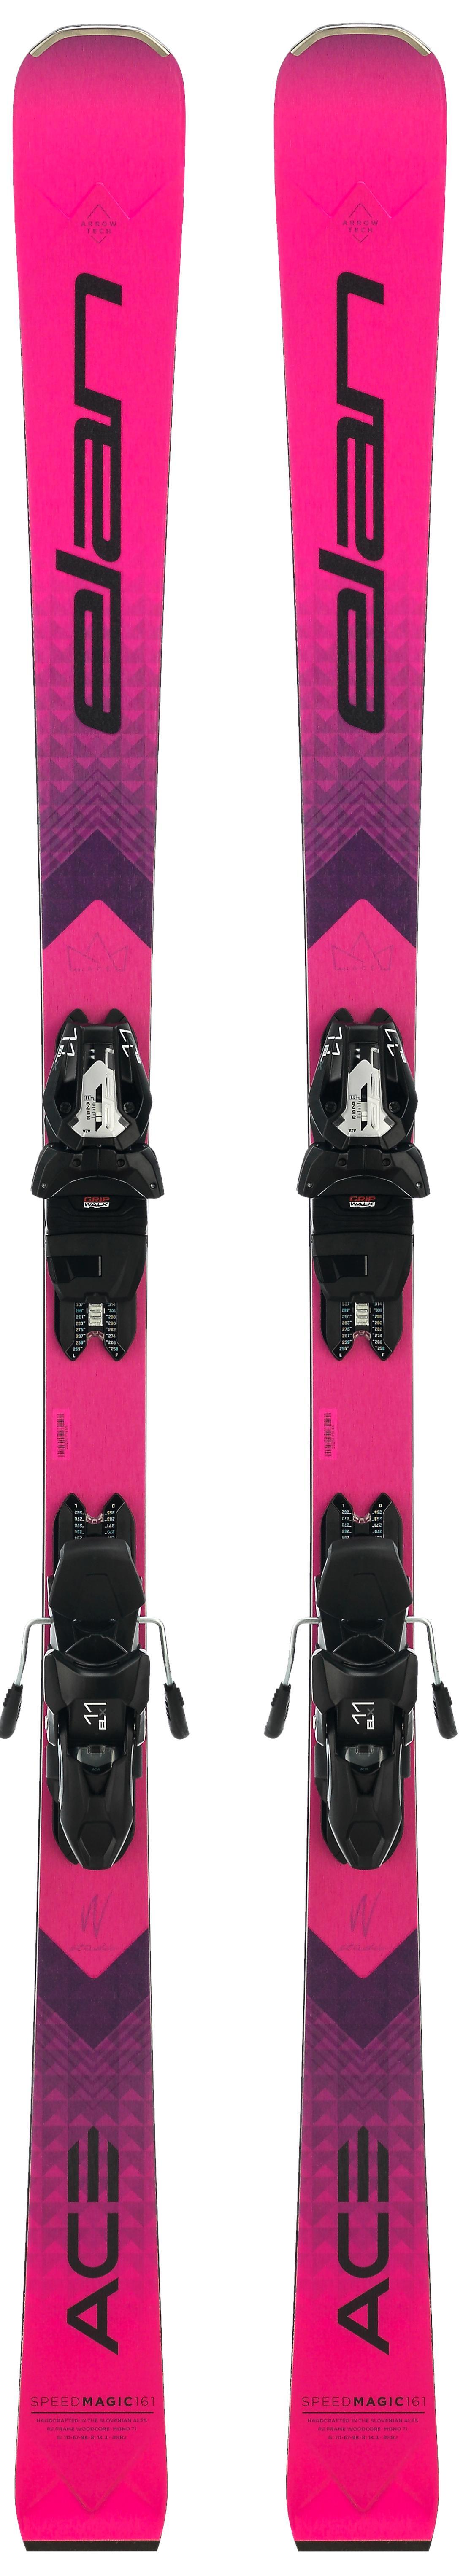 Спид айс. Горные лыжи elan inspire Fusion. Горные лыжи с креплениями elan Speed Magic Fusion + ELX 11.0. Сноуборд elan 155. Elan Ace Speed Magic.